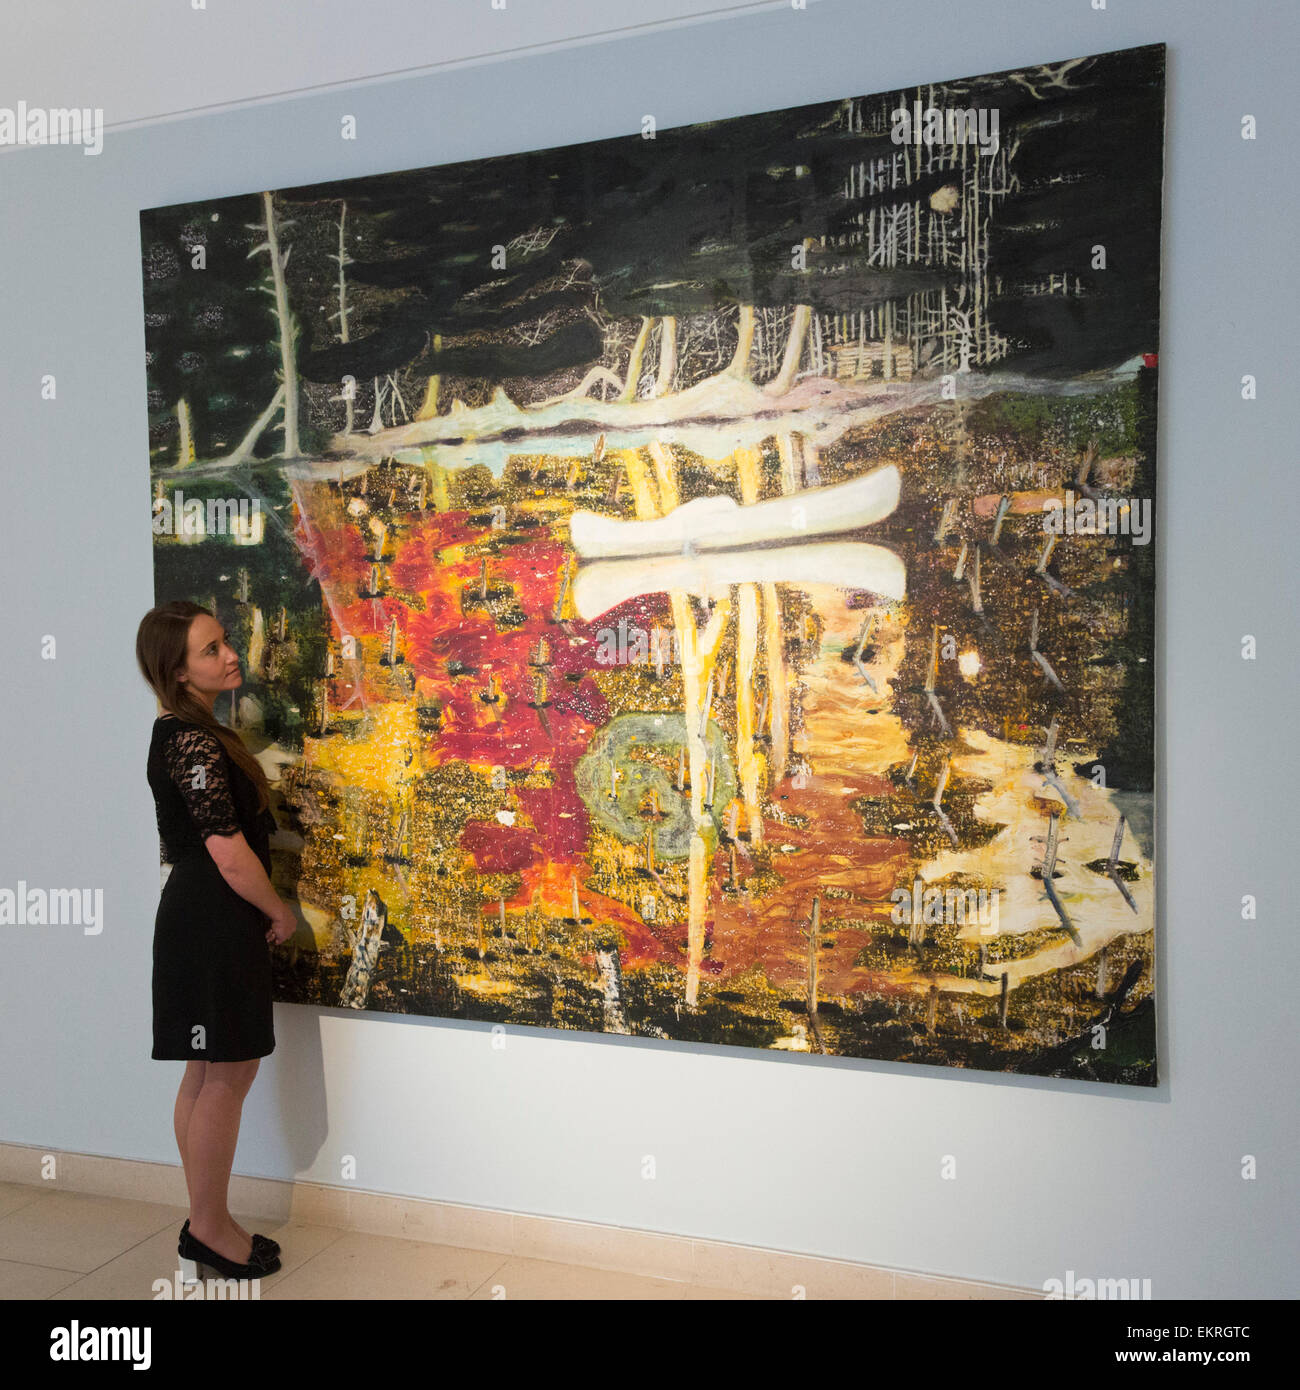 Londres, Reino Unido. 13 de abril de 2015. Un empleado de Christie's mira  el Peter Doig pintura inundada, estimación de US-$20-30m. Christie's exhibe  una selección de casi cincuenta obras procedentes de las